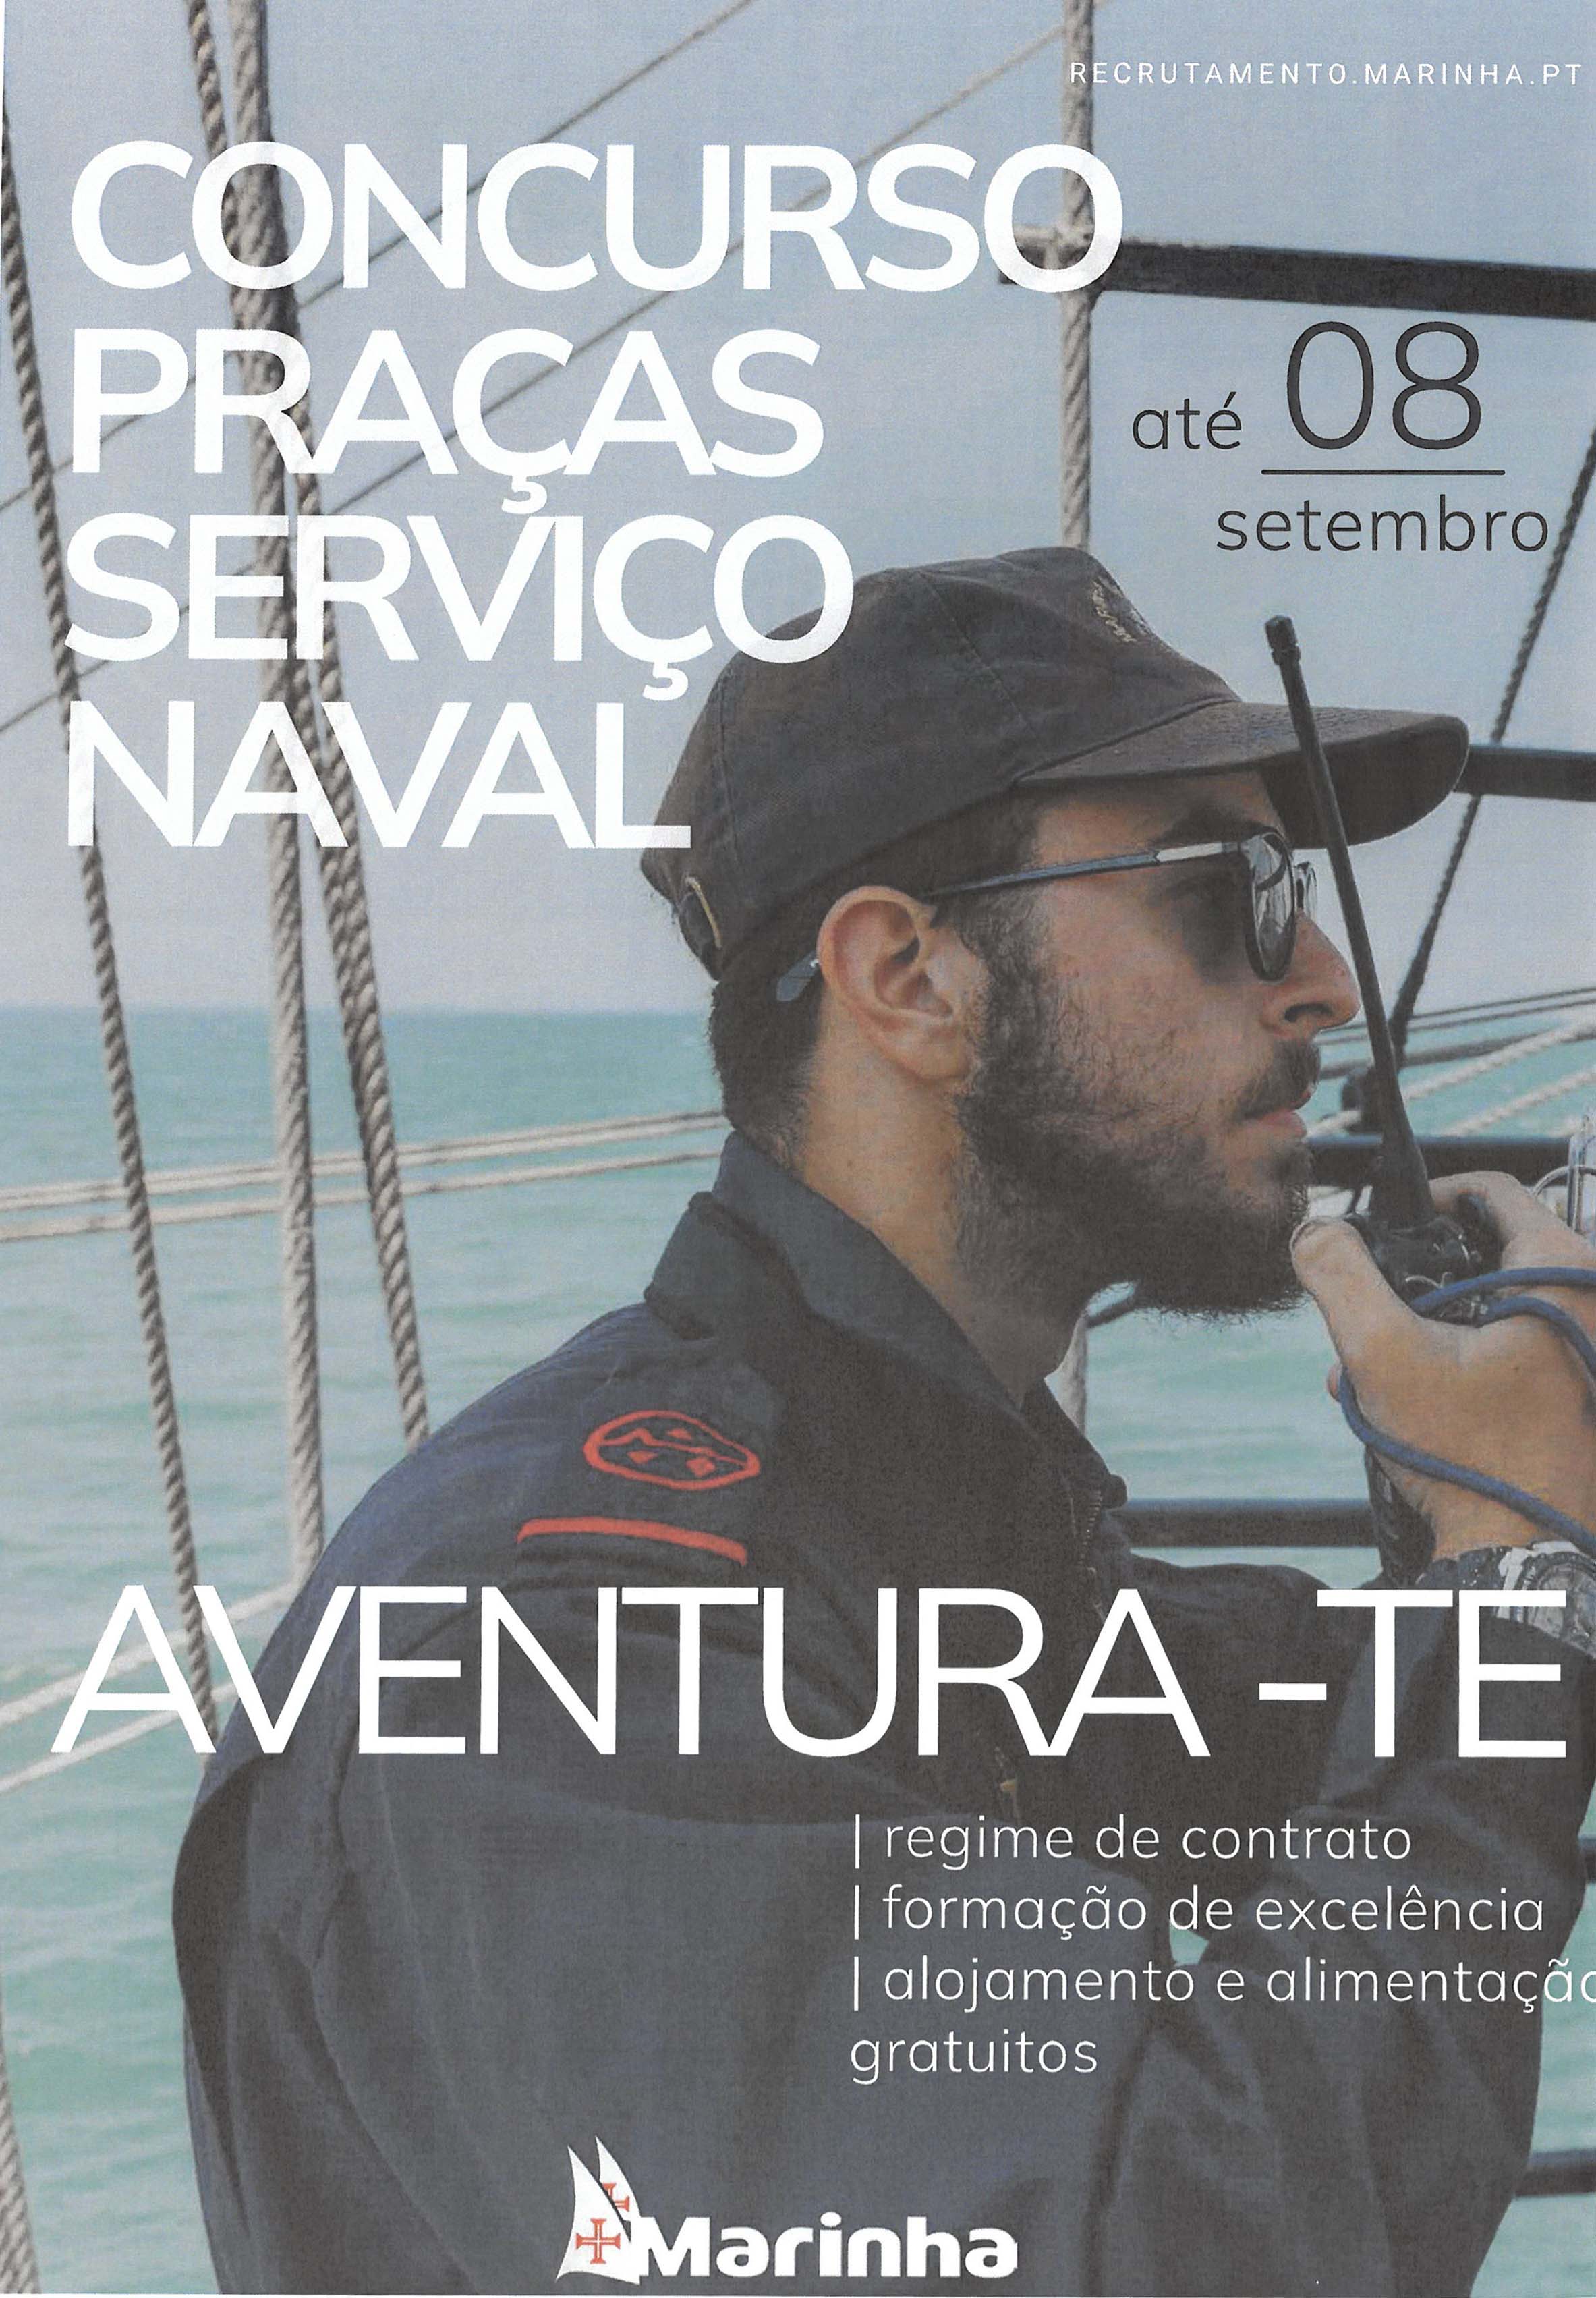 Imagem Concurso Praças Serviço Naval